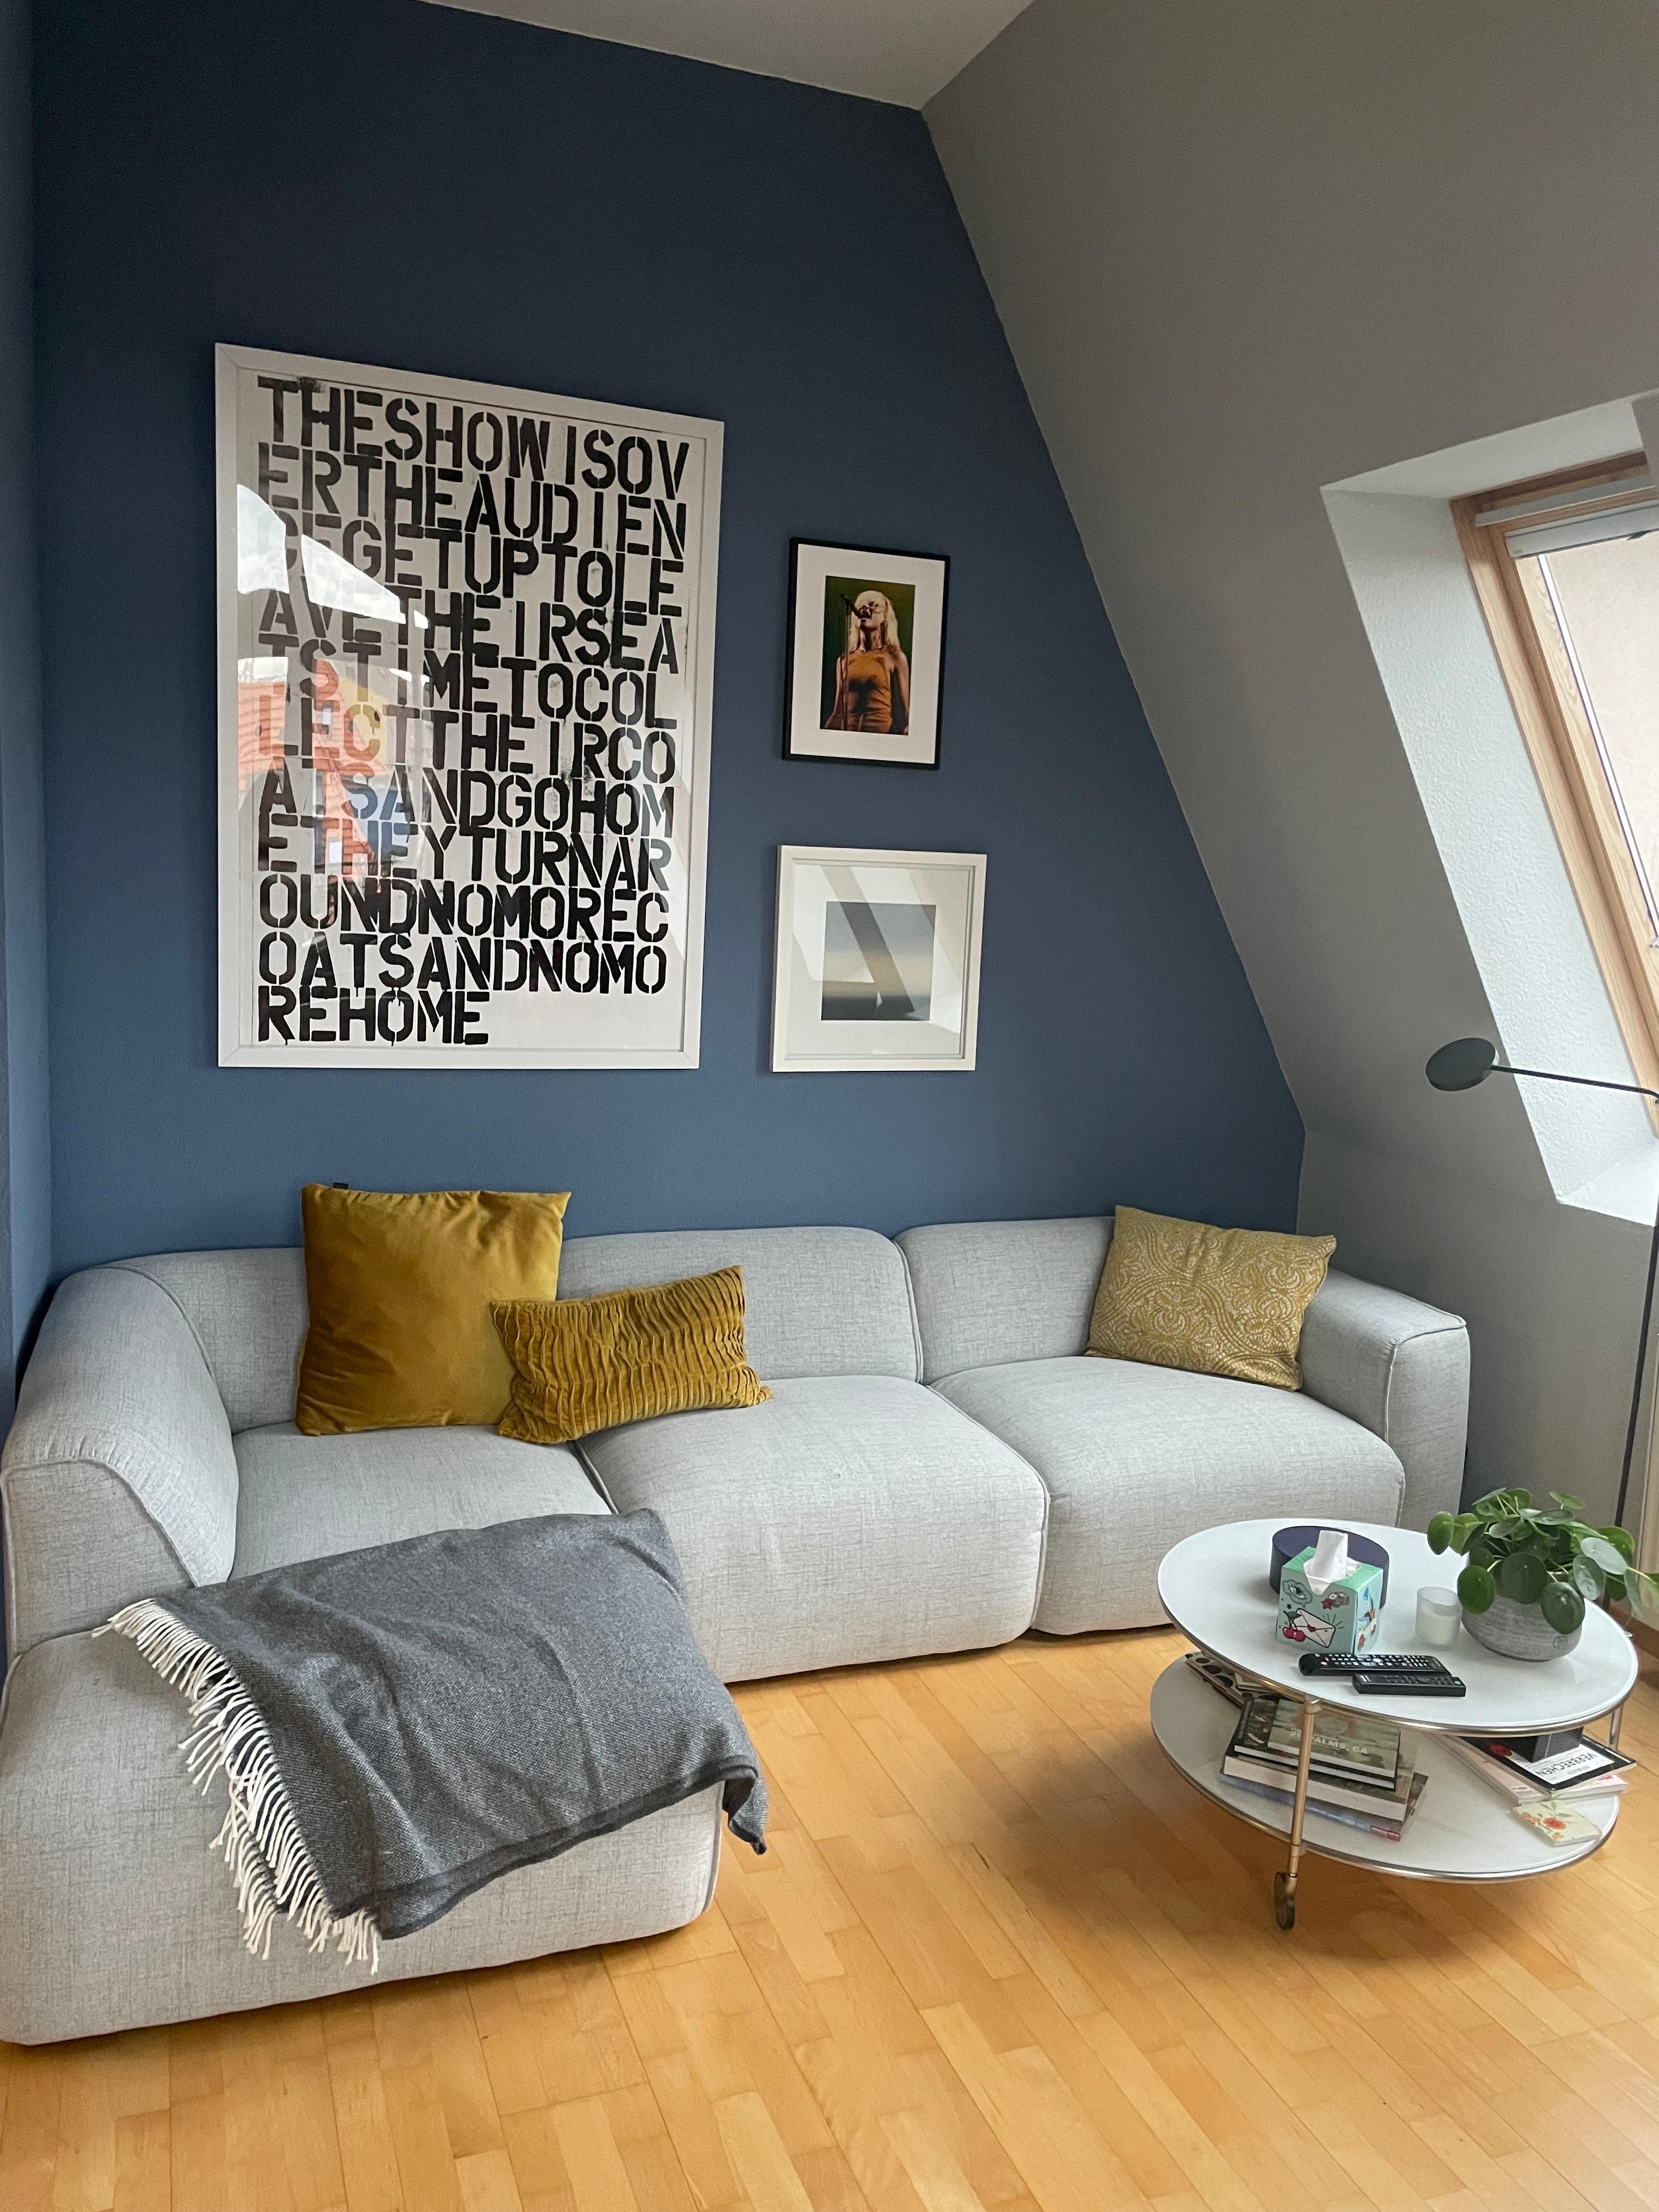 Tolles Sofa, coole Wandfarbe - aber es fehlt ein Teppich... 
#wohnzimmerumstyling 